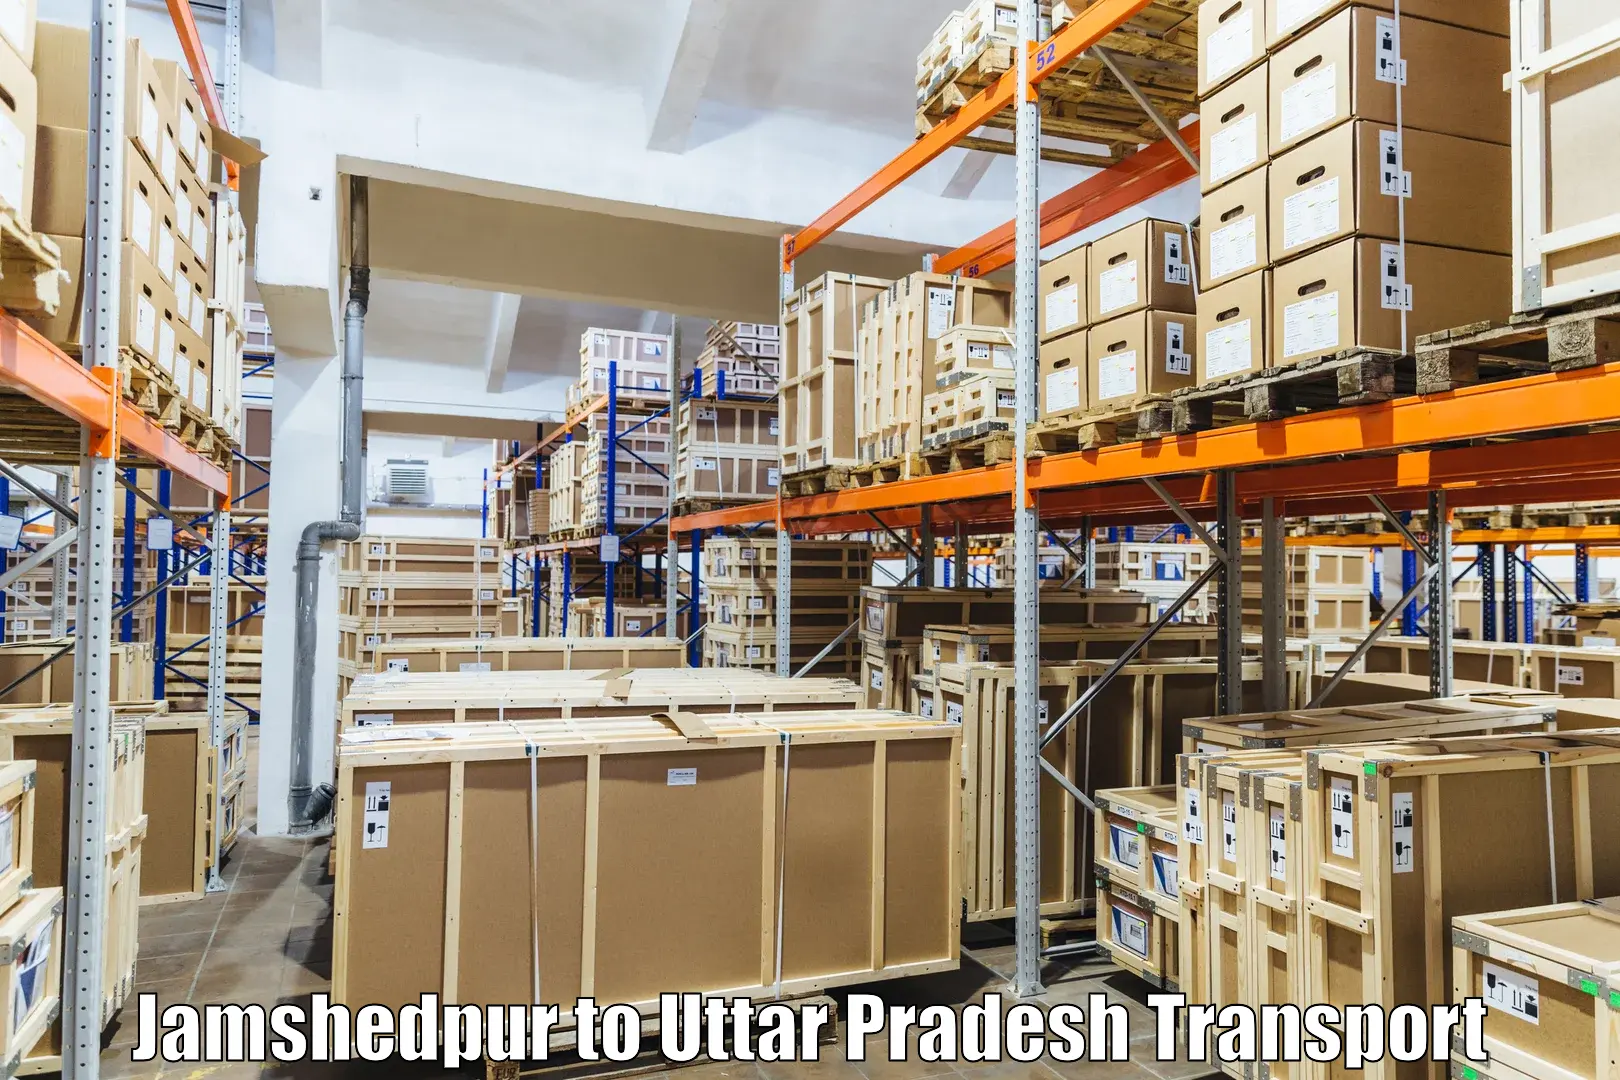 Transport shared services Jamshedpur to Kanth